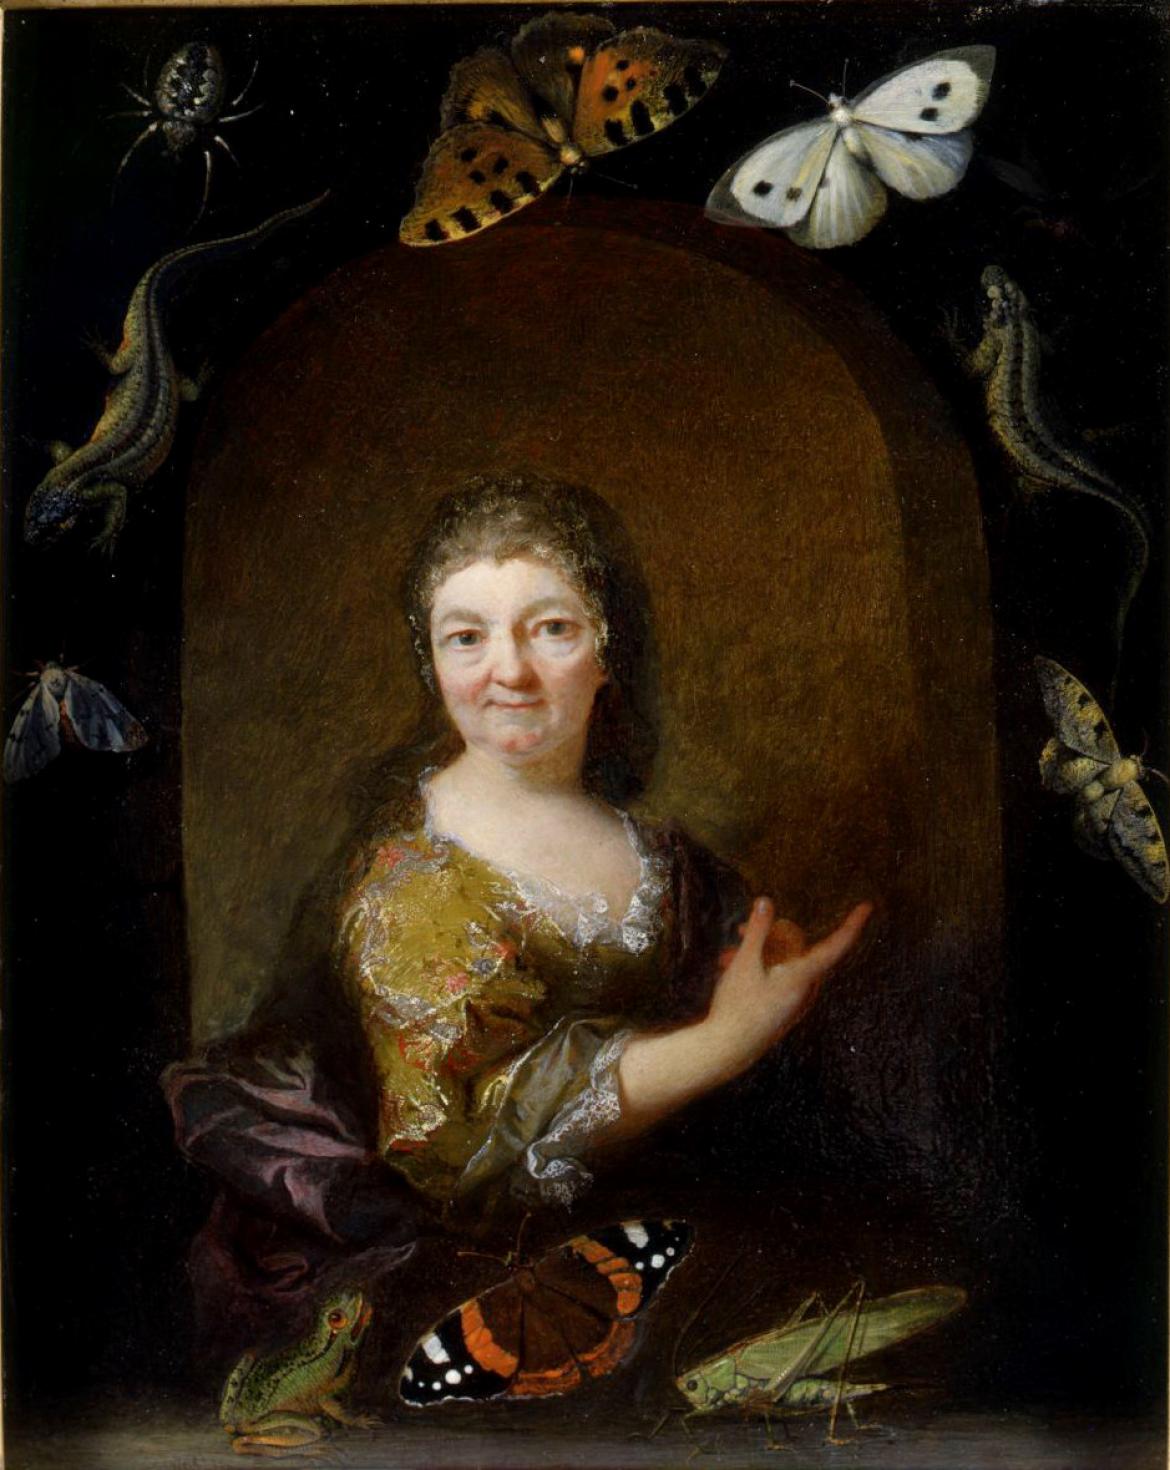 TOURNIERES Robert, Le Vrac dit, Portrait de Femme âgée dit de Maria Sybilla Merian 